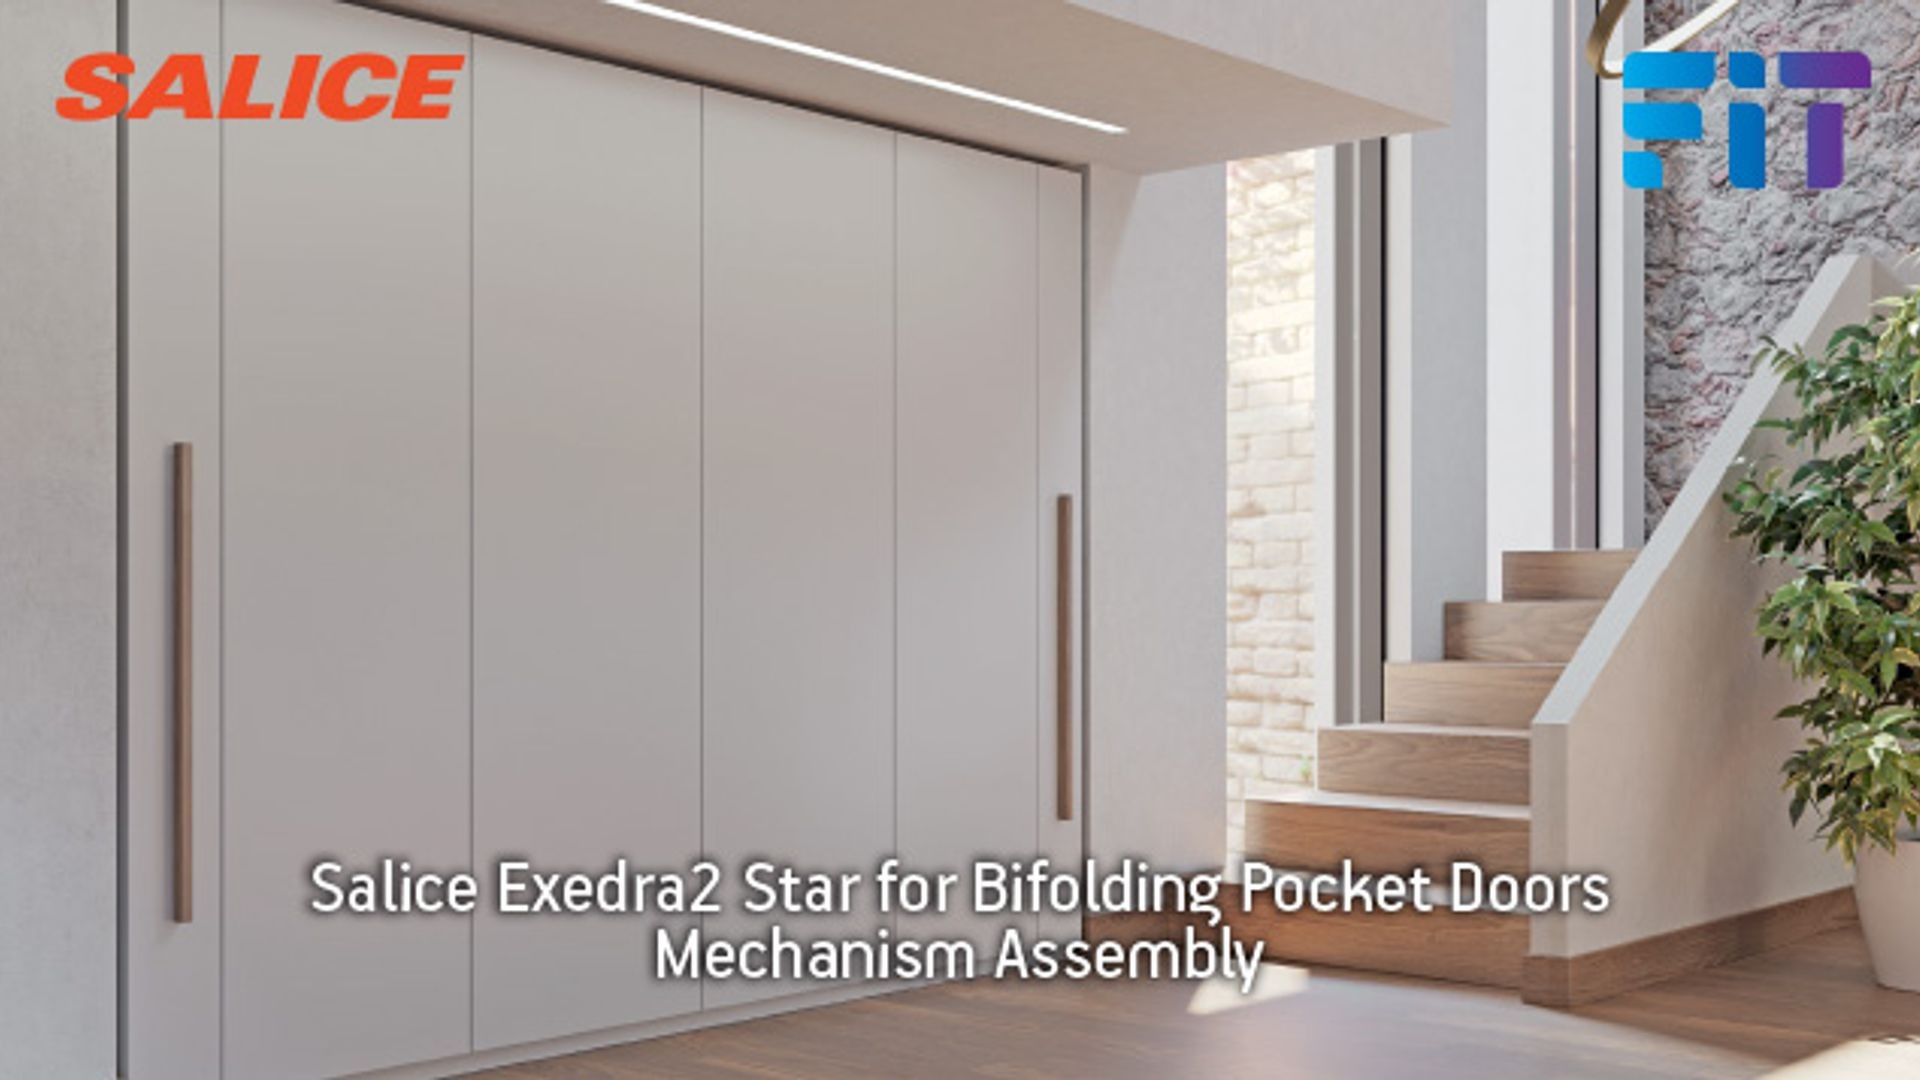 Salice Exedra2 Bifolding Pocket Door gallery detail image